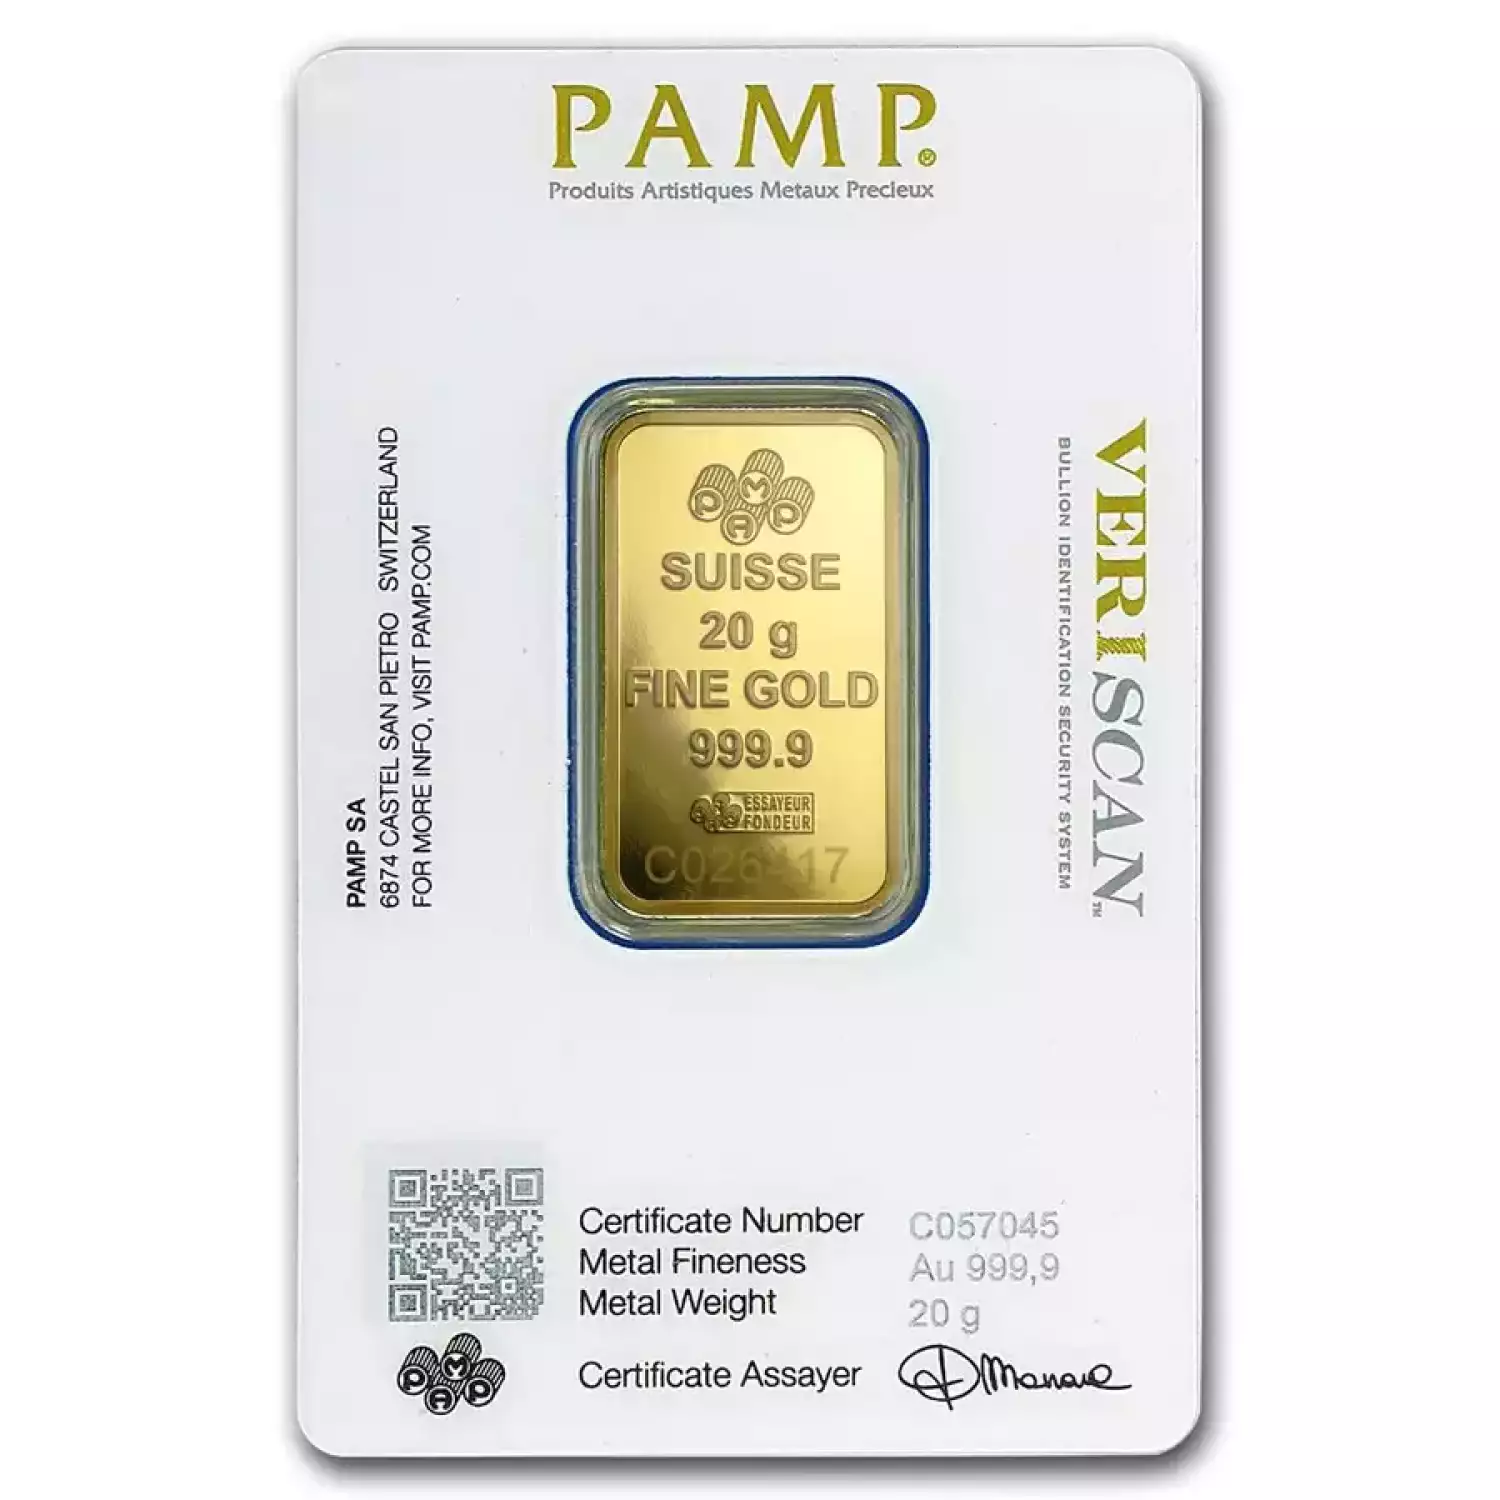 20g PAMP Gold Bar - Fortuna (3)